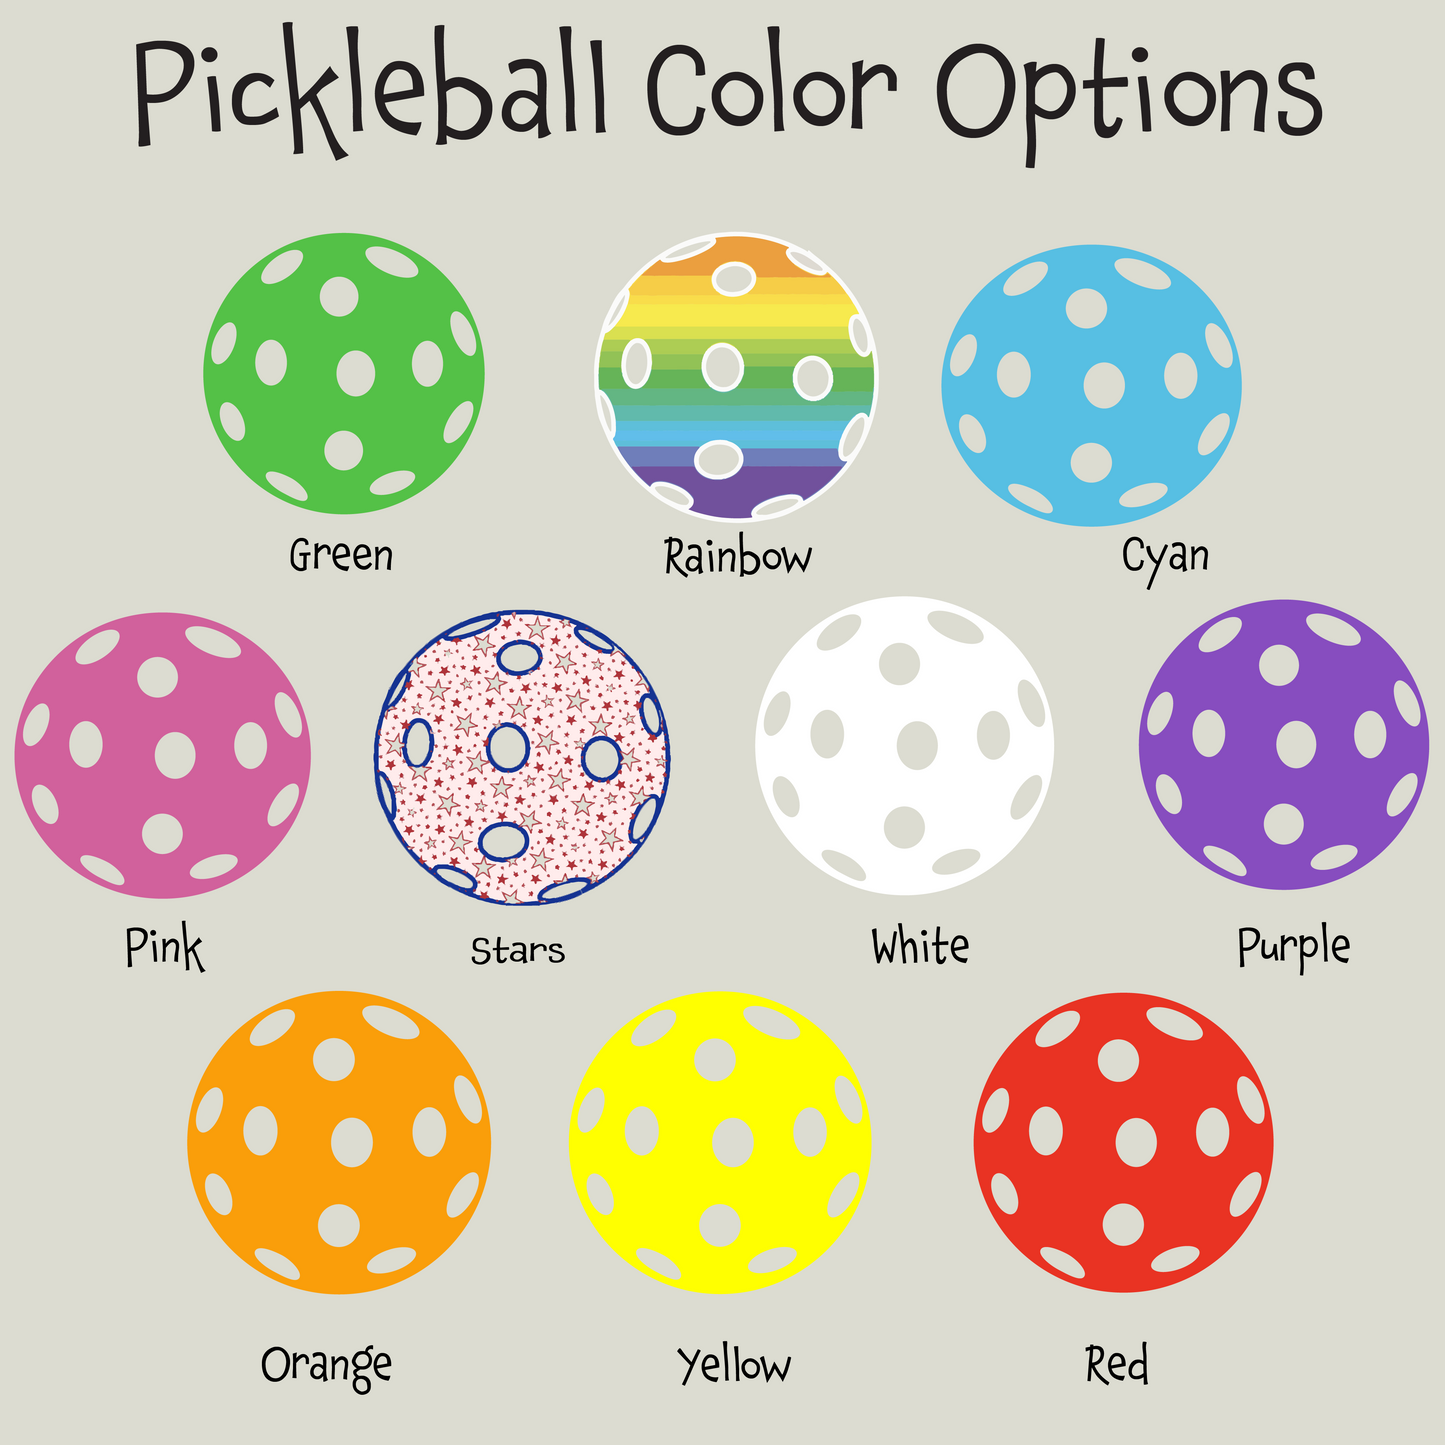 Red Pickleball (Customizable) | Pickleball Visors | Moisture Wicking 100% Polyester